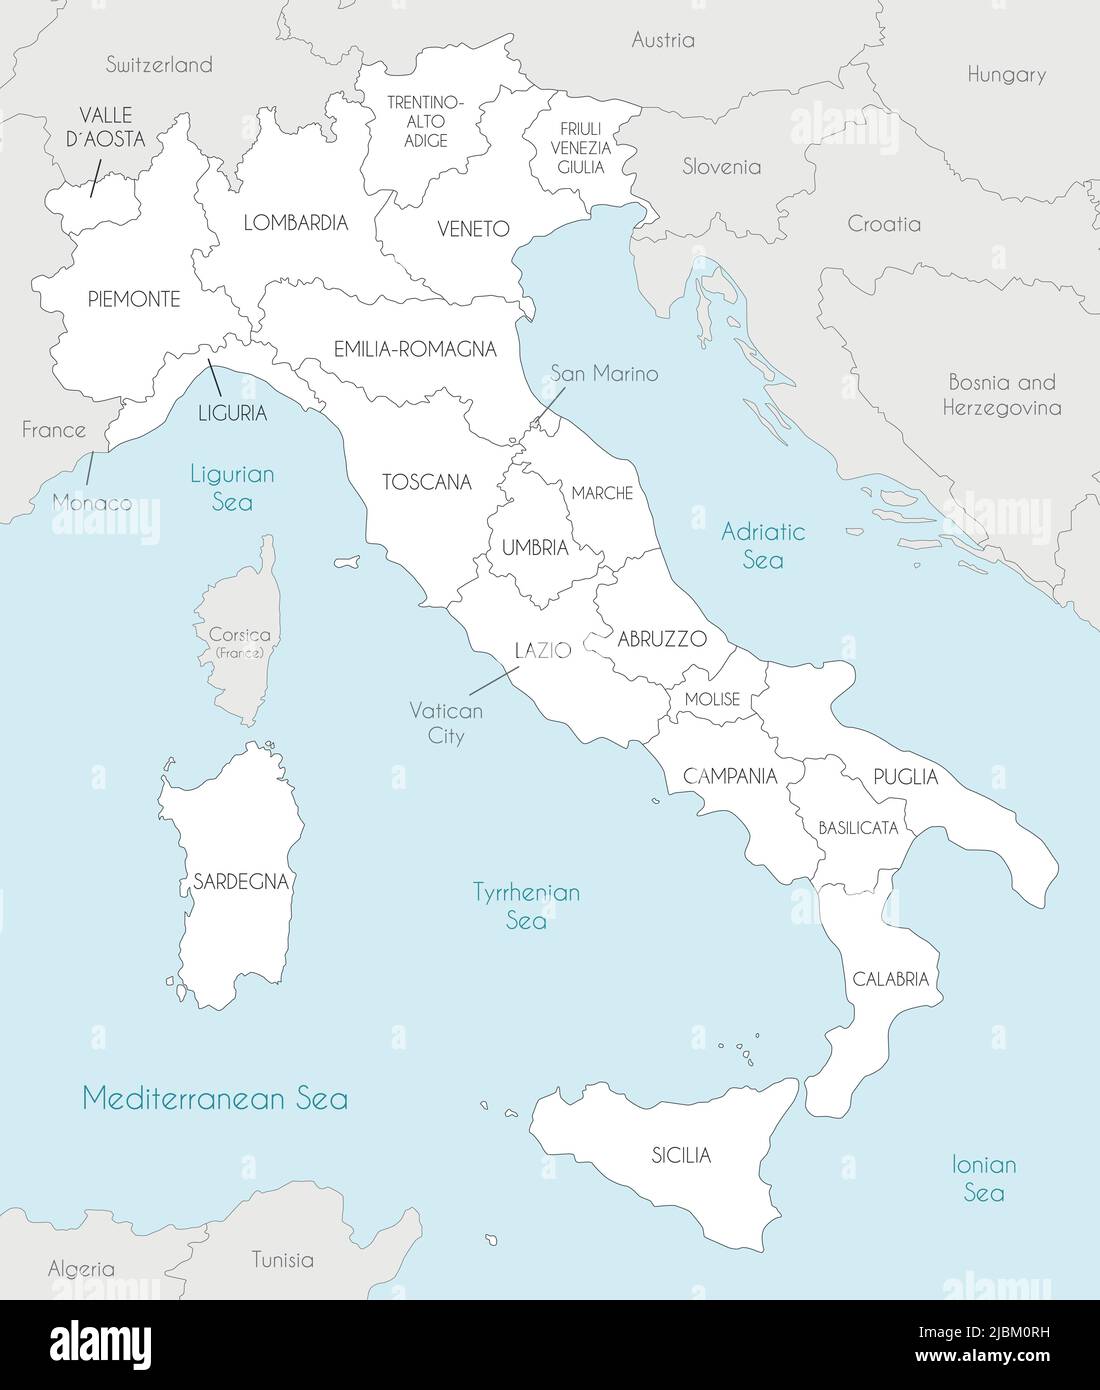 Carte vectorielle de l'Italie avec régions et divisions administratives, pays et territoires voisins. Calques modifiables et clairement étiquetés. Illustration de Vecteur